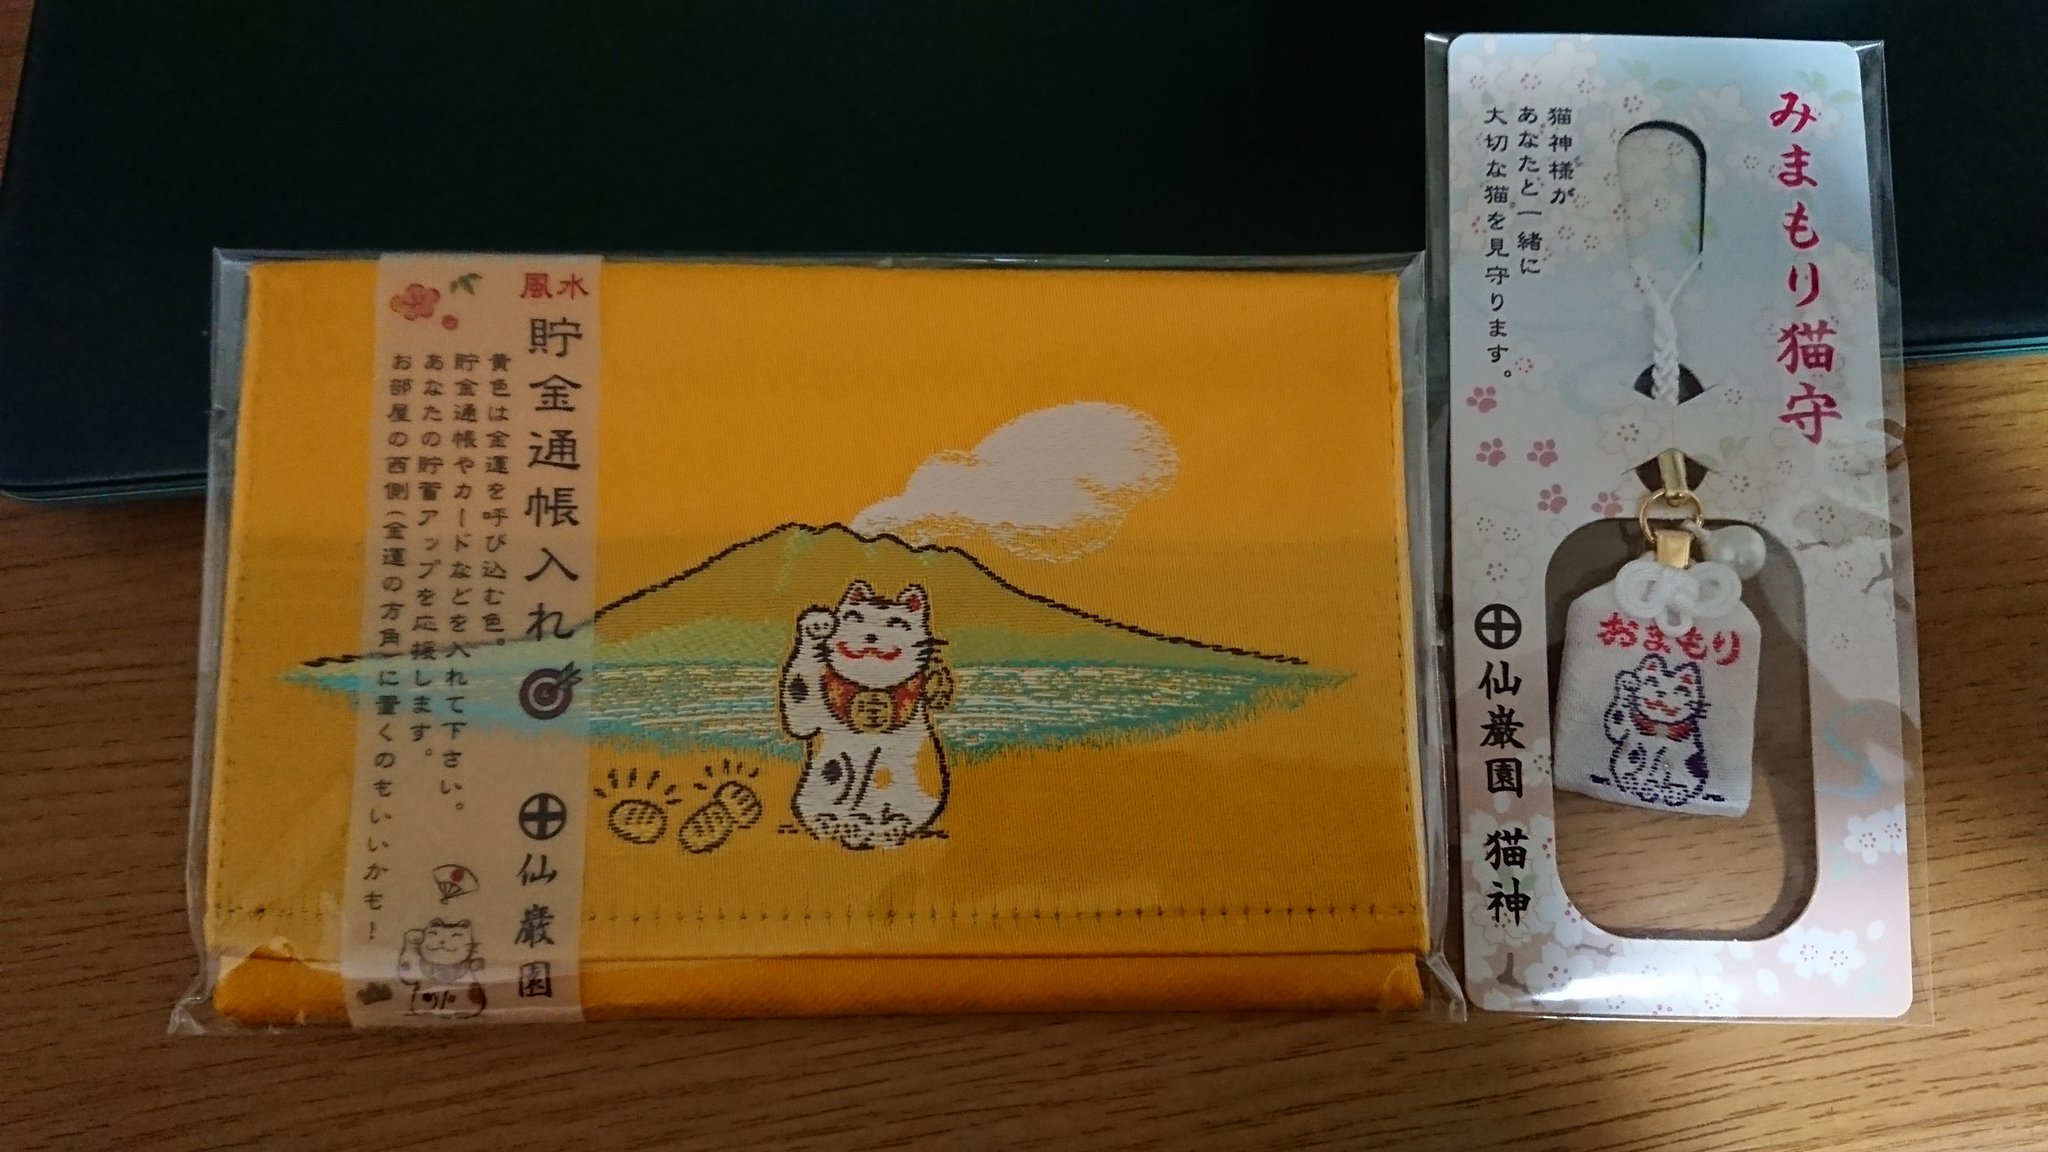 僕の素晴らしいタコス 日本で唯一ねこを祀った猫神神社と霧島神宮行ってきました お守りがめちゃかわいい 霧島神宮 のお守りは裏表６匹のねこで六猫 無病守だそうですかわいい T Co Ptzouvklru Twitter